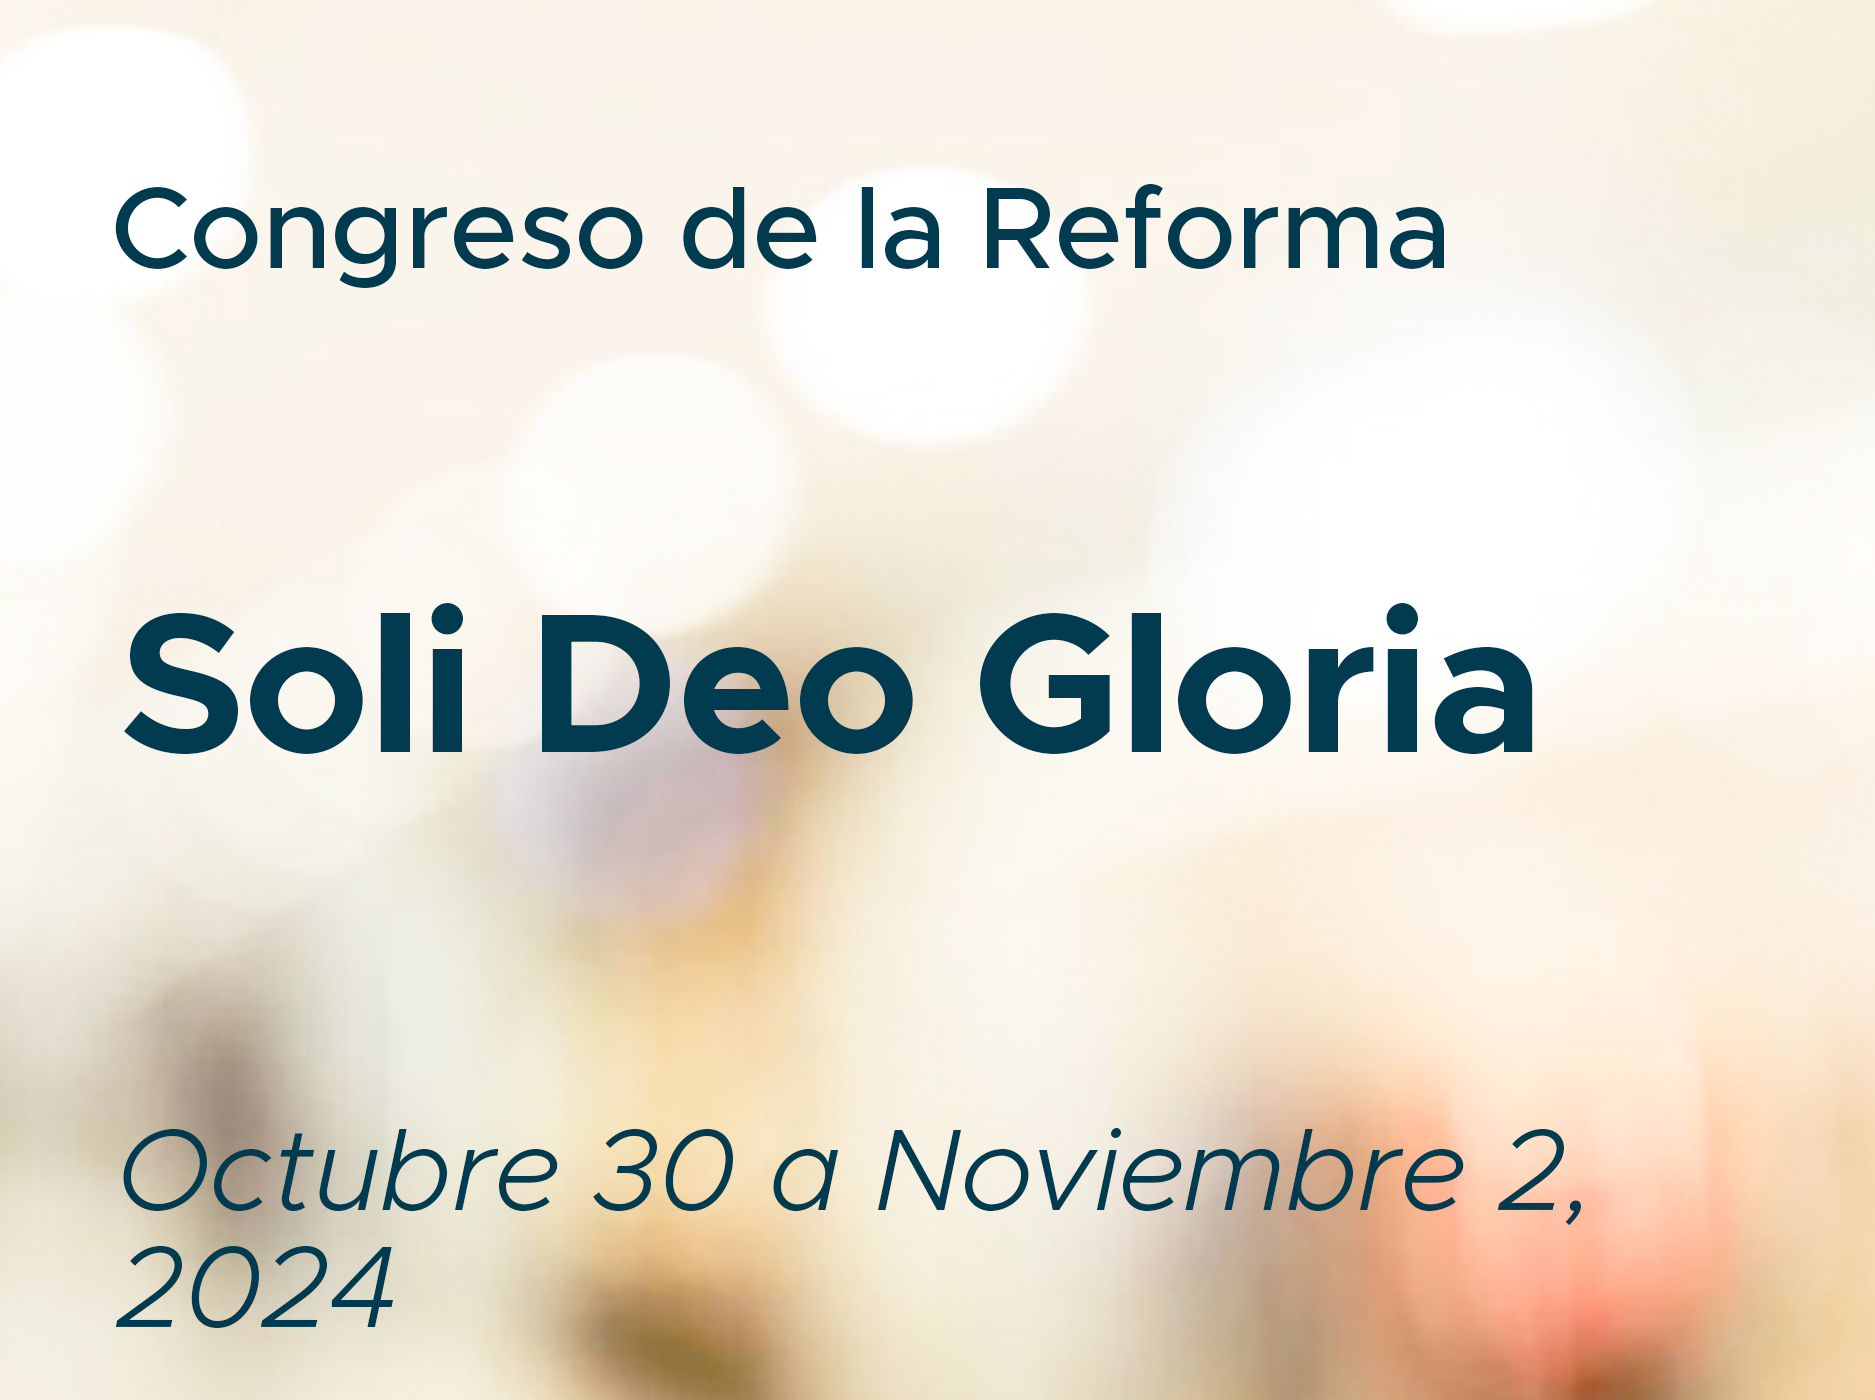 Congreso de la Reforma "Soli Deo Gloria"